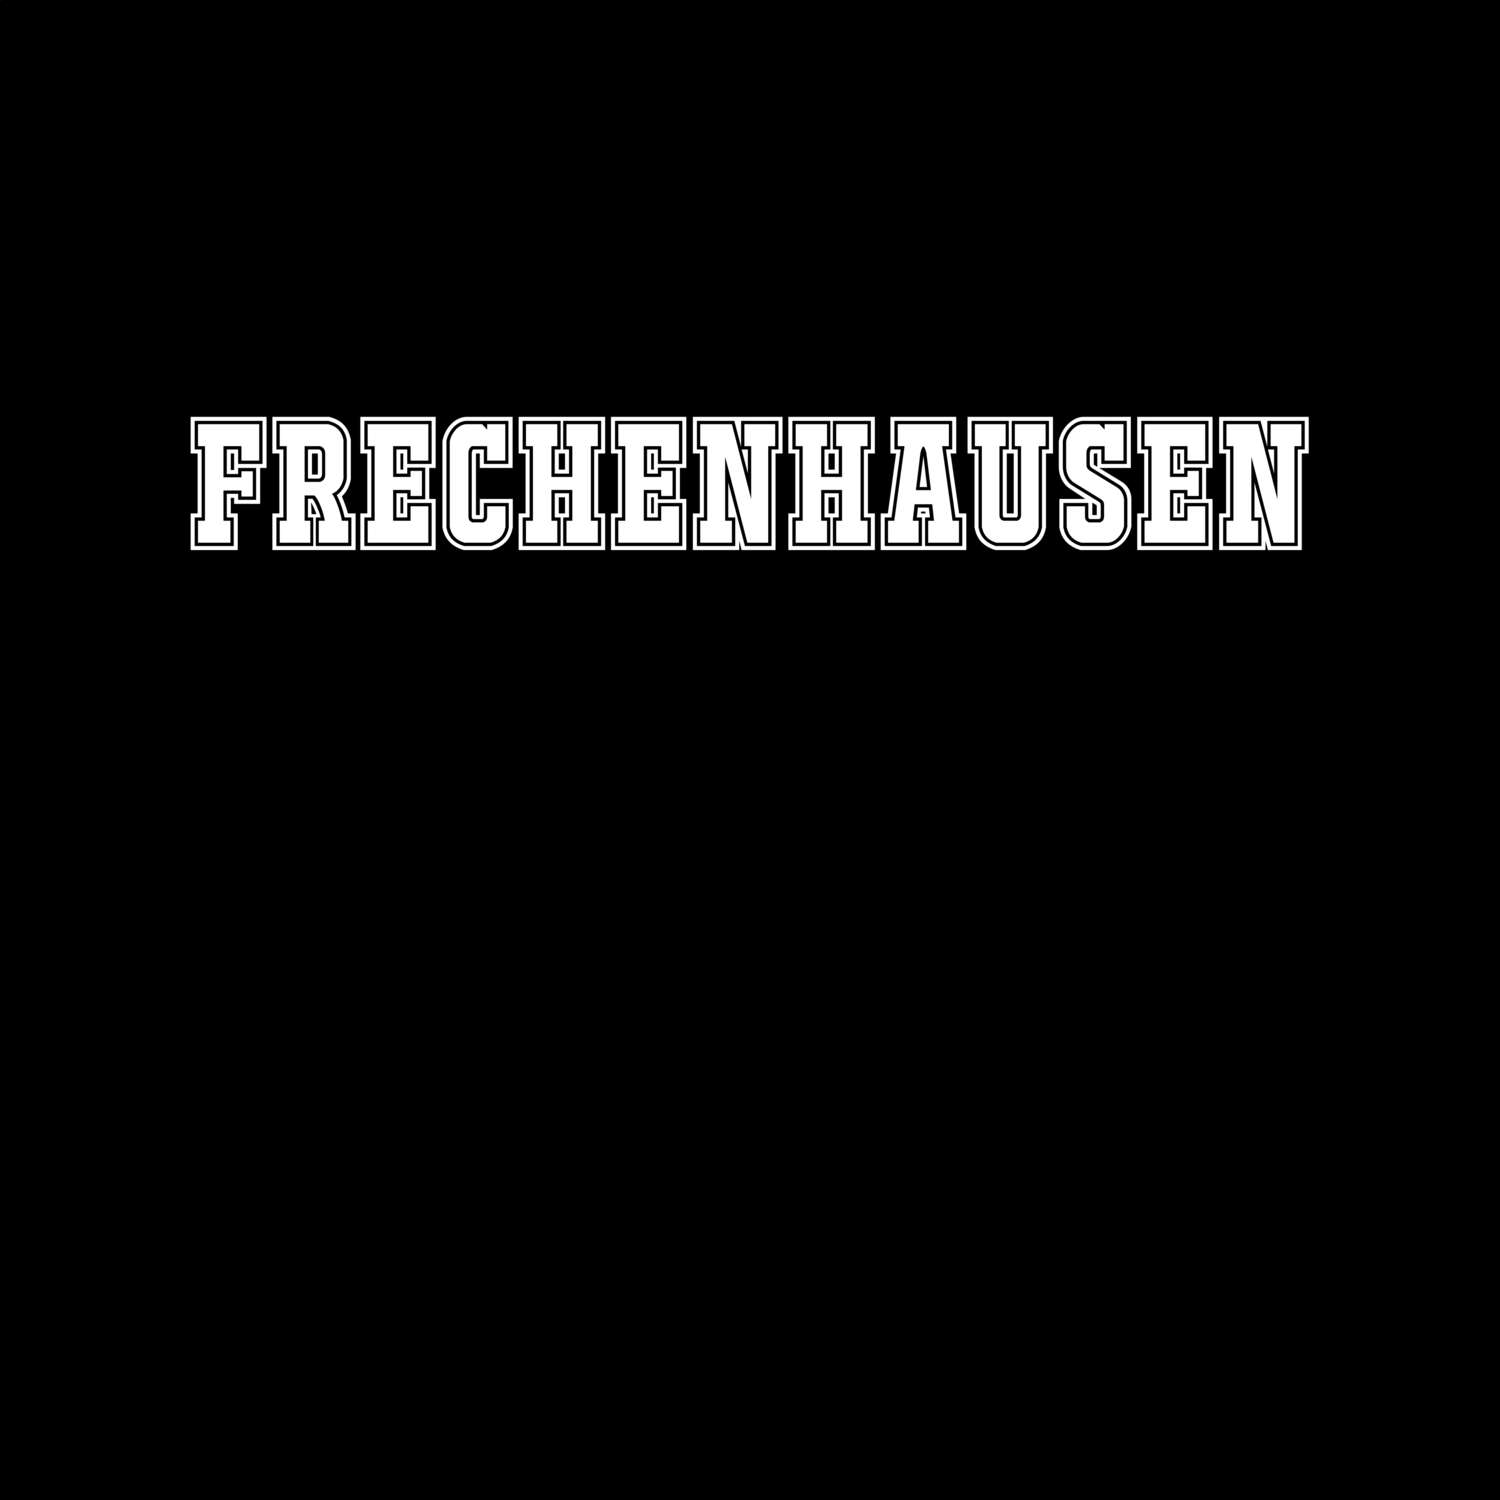 Frechenhausen T-Shirt »Classic«